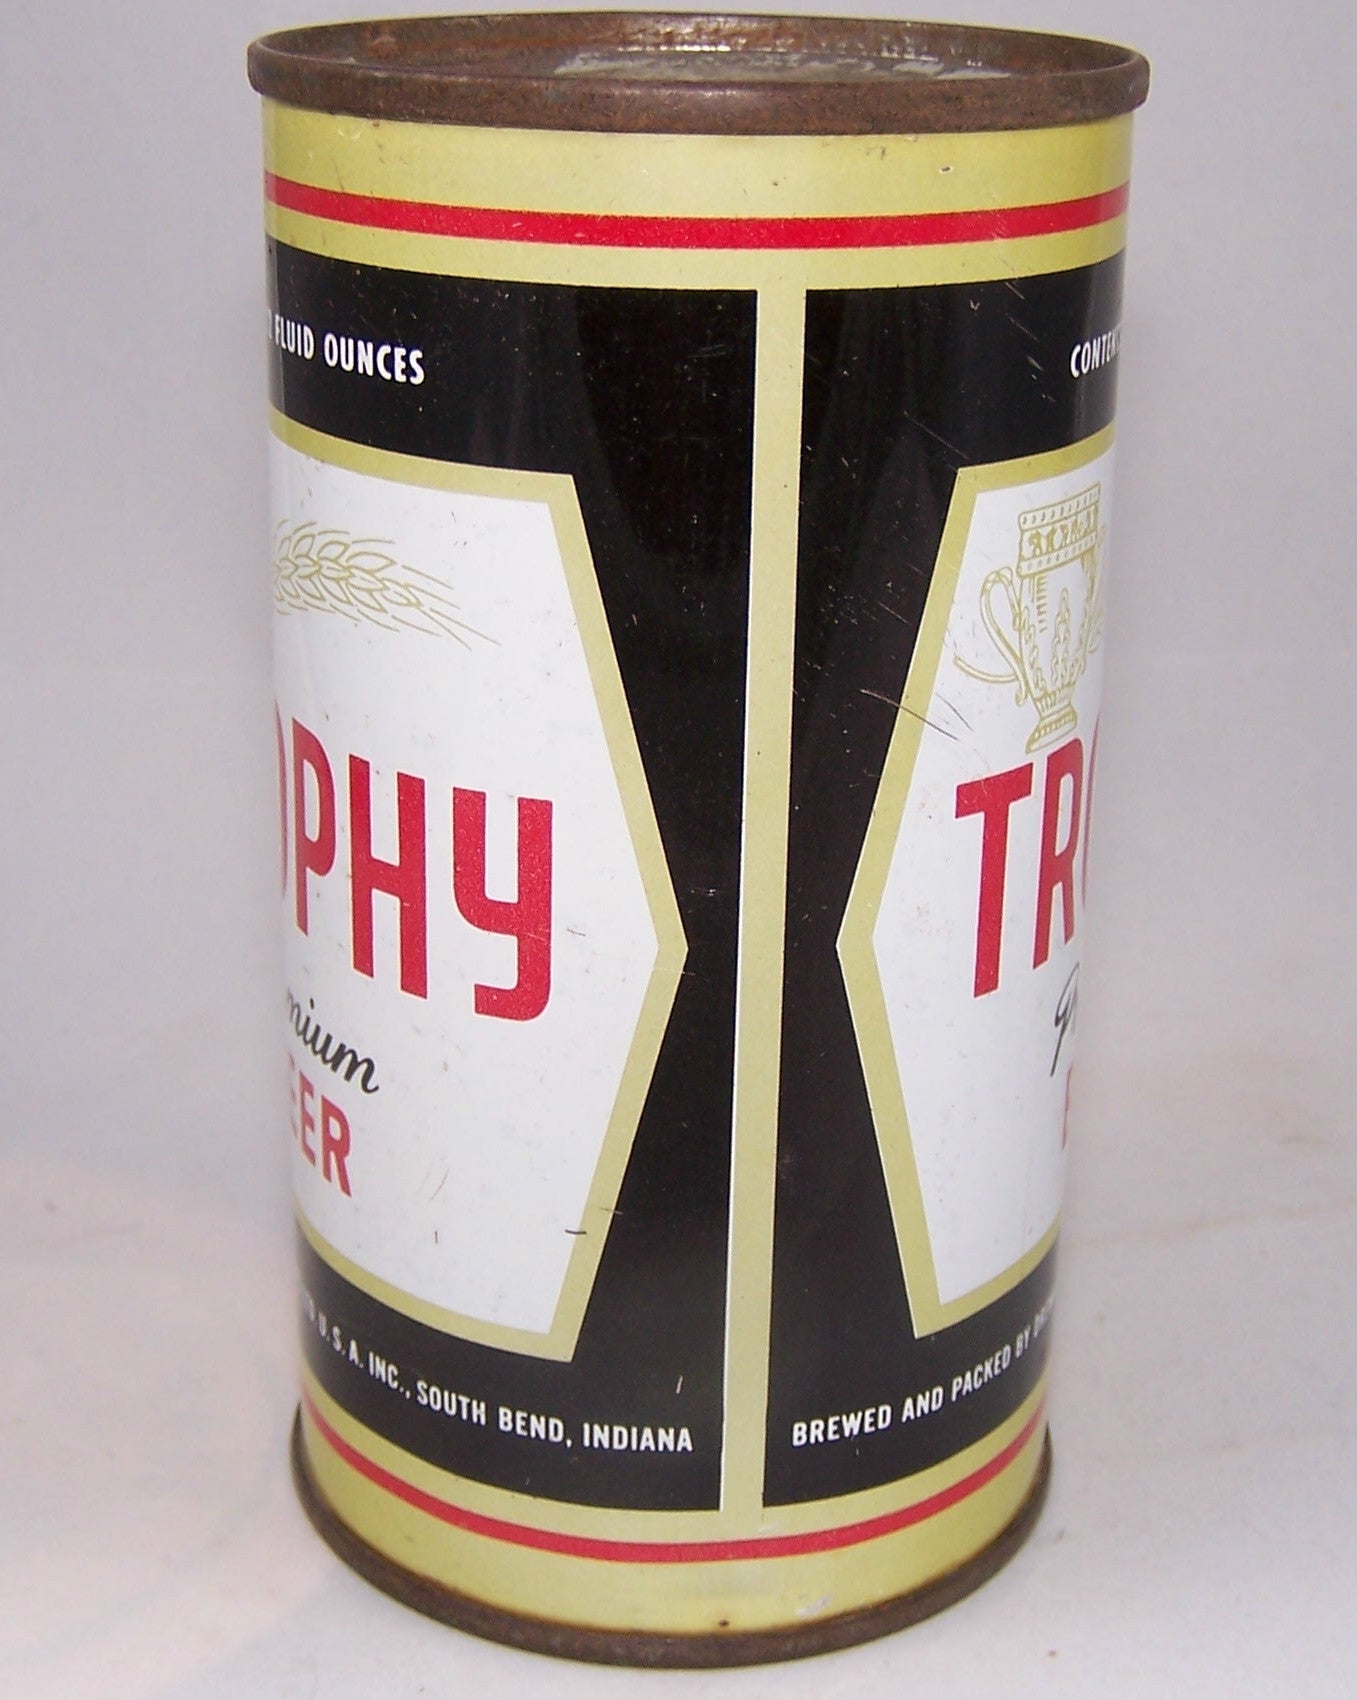 Trophy Premium Beer, USBC 140-3, Grade 1